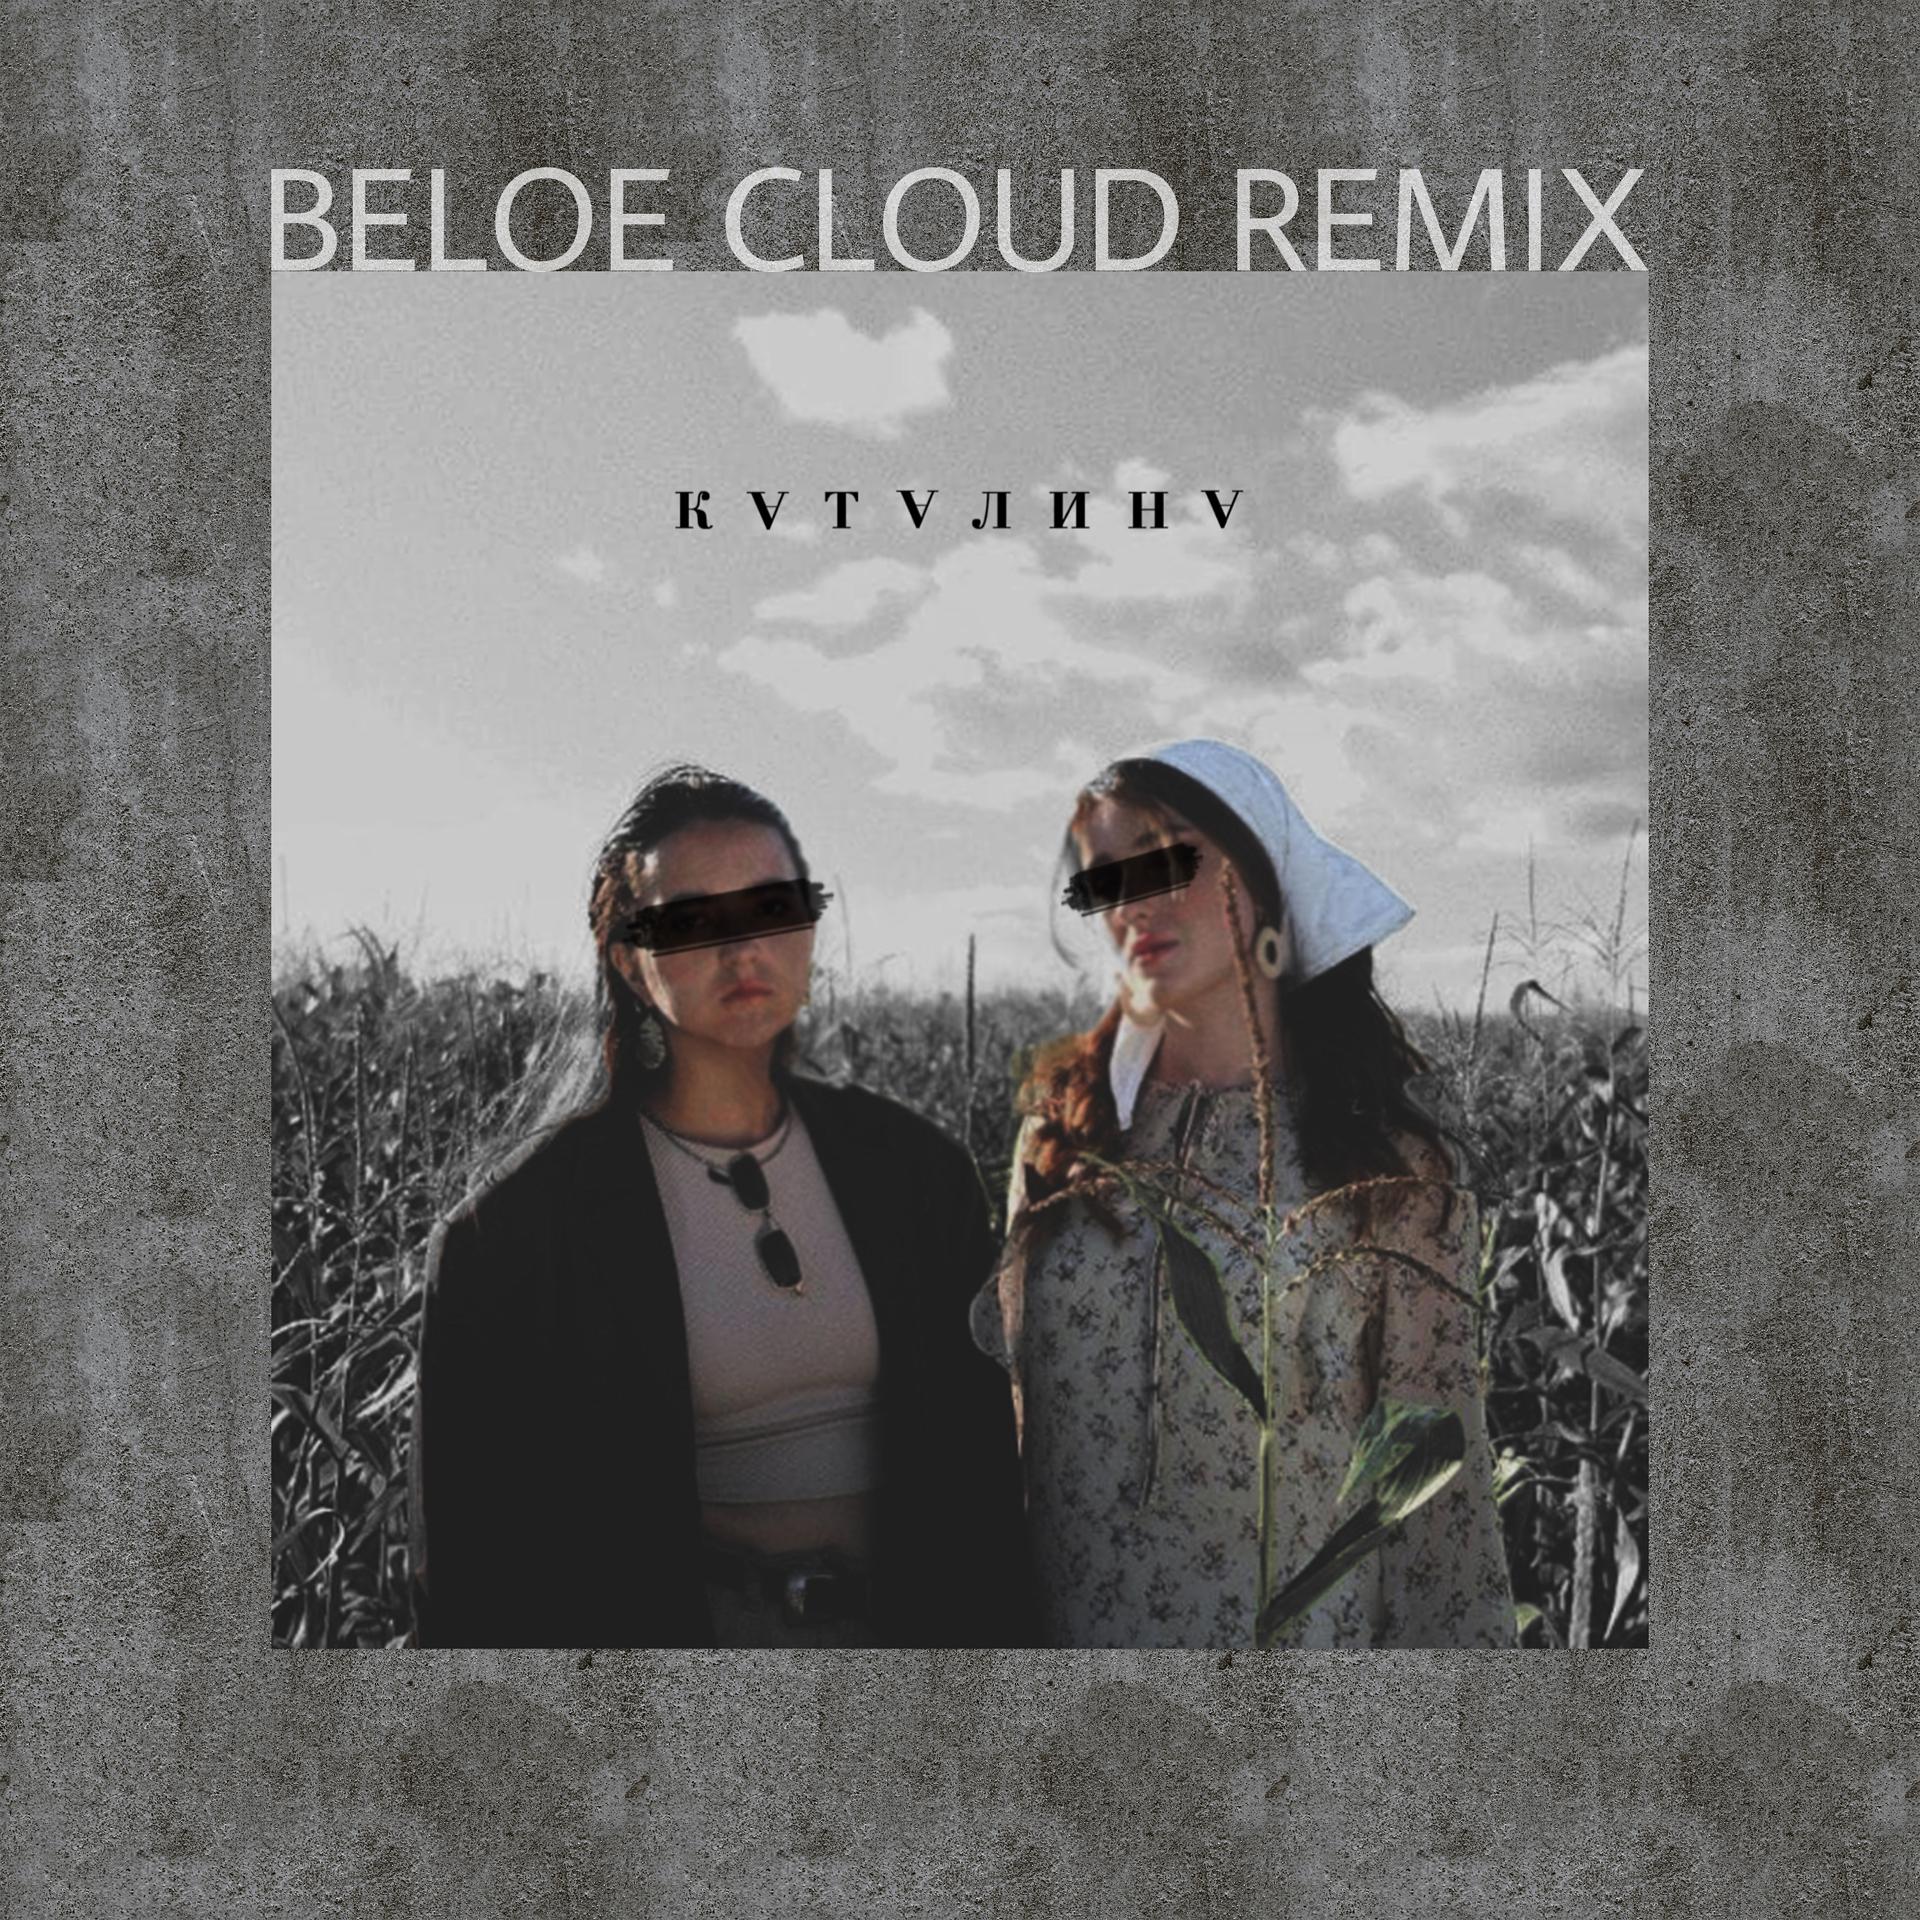 Облака ремикс слушать. Трек clouds Remix. Блестящие а я все летала beloe cloud Remix. Улетай со мною в облака ремикс рингтон. Белое Клауд лав ИТ.